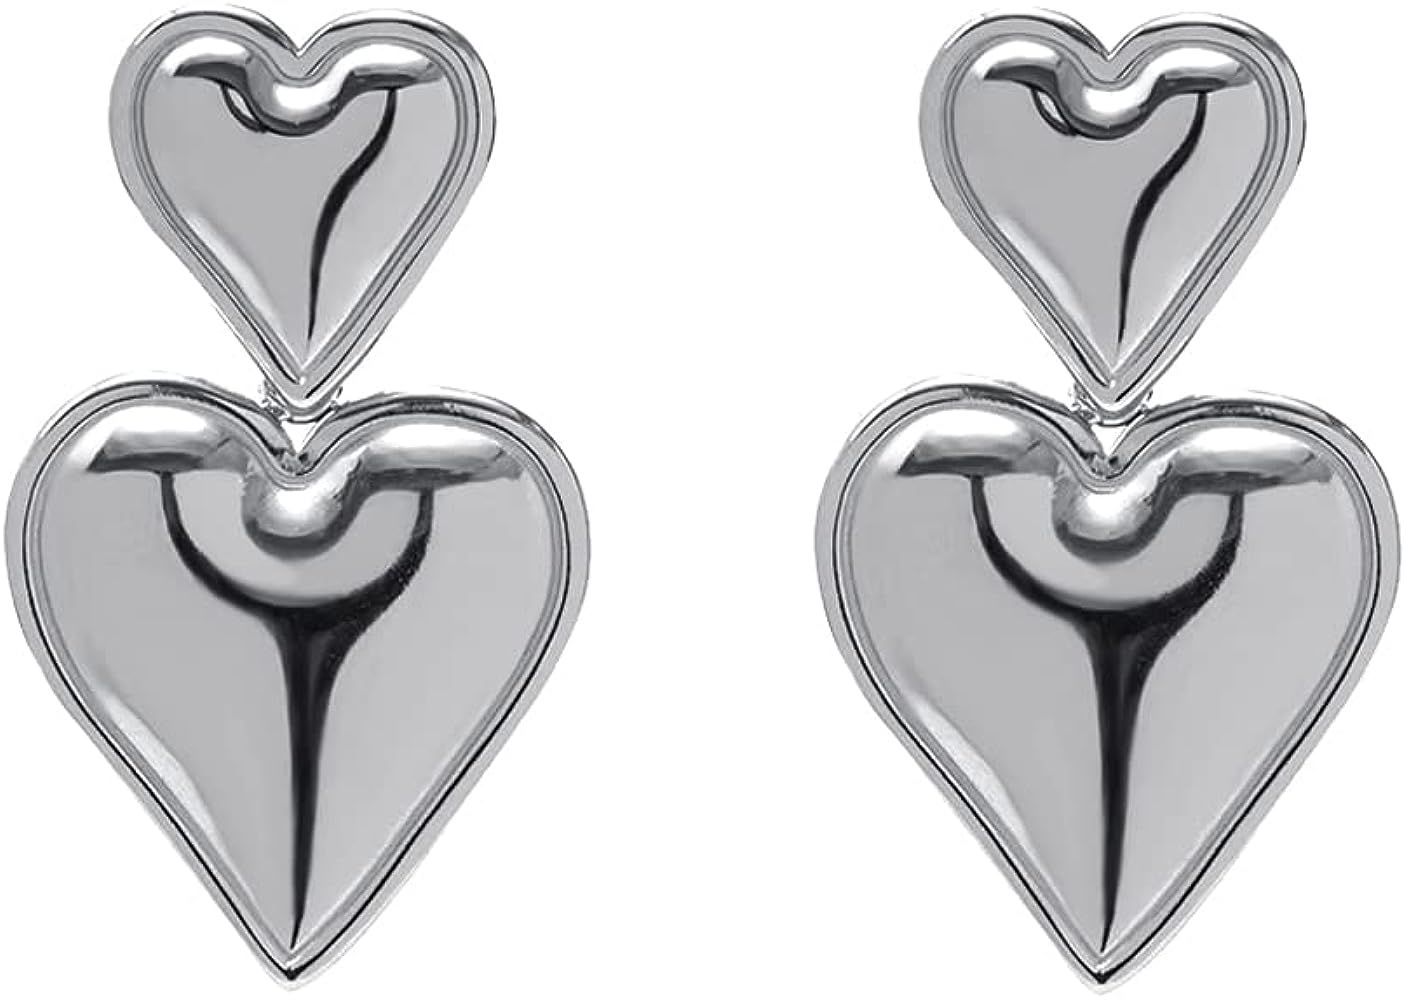 Heart Drop Earrings Double Heart Statement Dangle Earrings for Women Girls Gold Silver | Amazon (US)